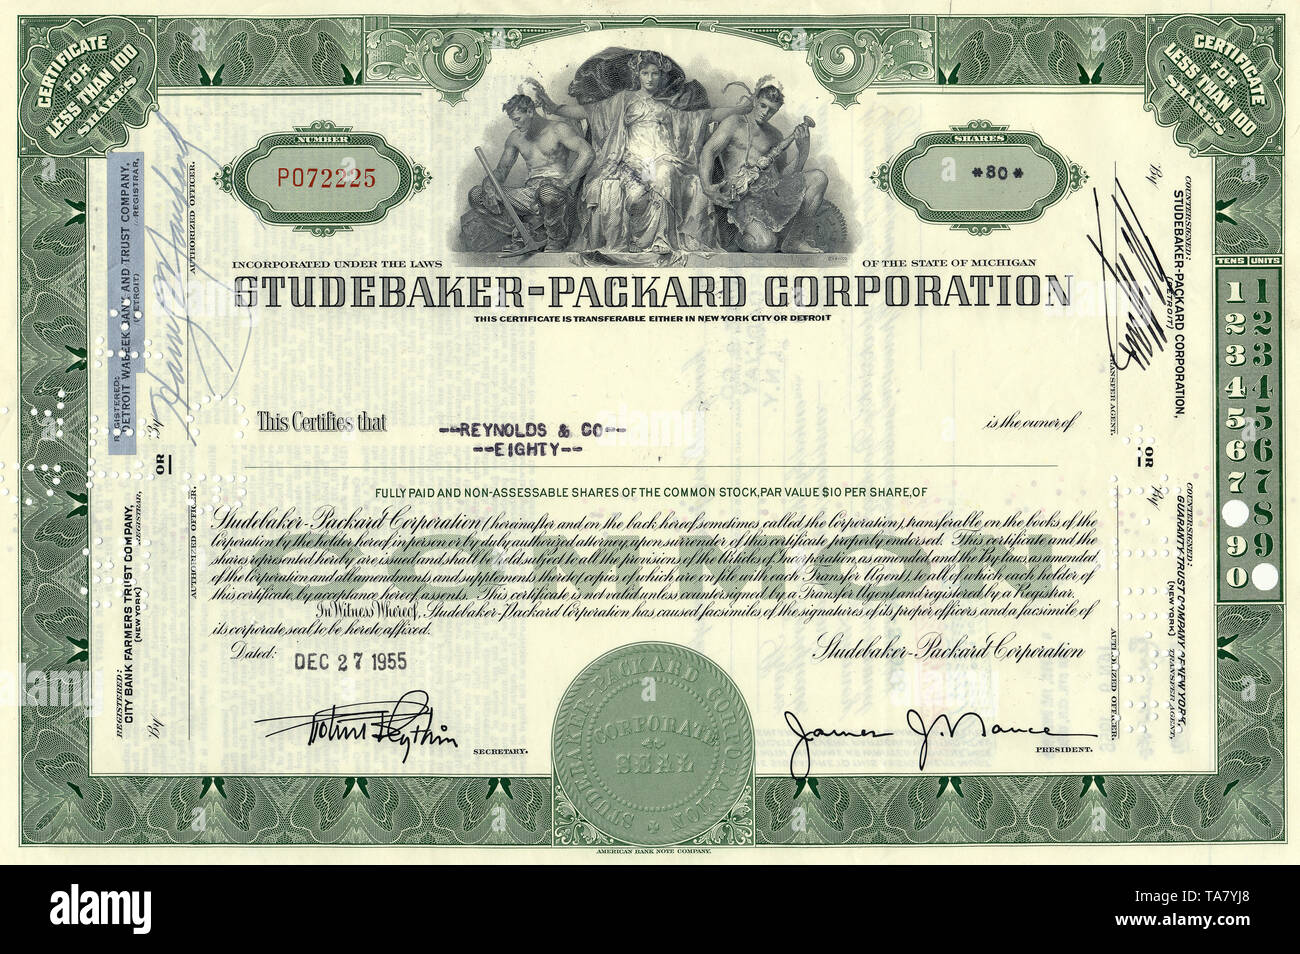 Historische Aktie, Automobilhersteller, Studebaker-Packard Corporation, 1955, New York, USA, historische Zertifikat, Automobilhersteller Stockfoto